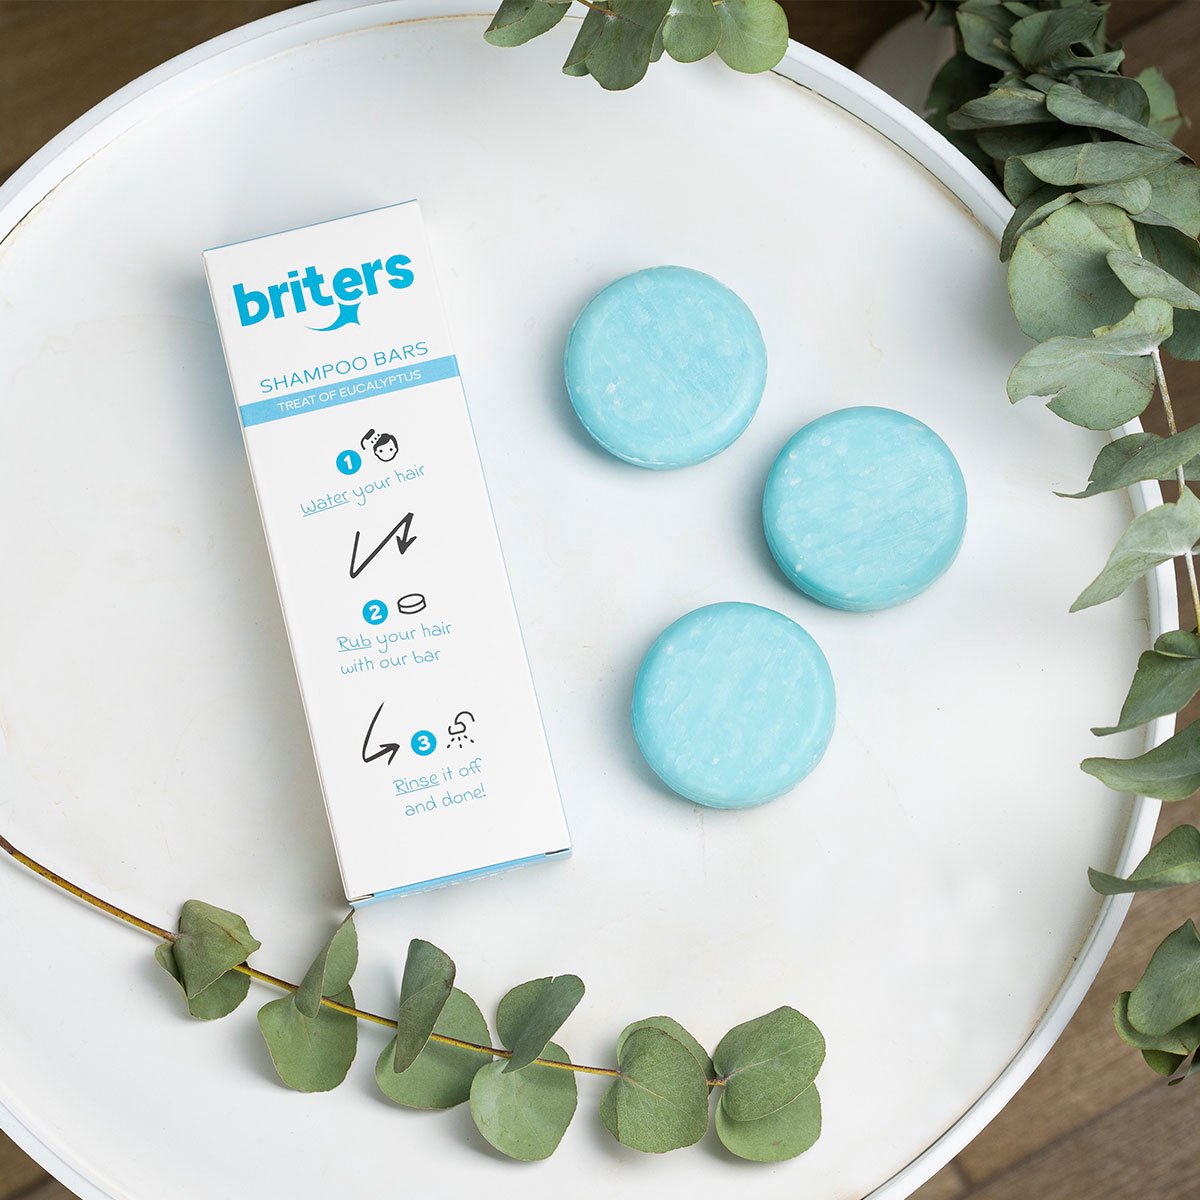 Briters Shampoo Bars - Treat of Eucalyptus - 3 Stuks - 100% natuurlijk - Ecologisch Shampoo - Nederlands Product - Haarverzorging